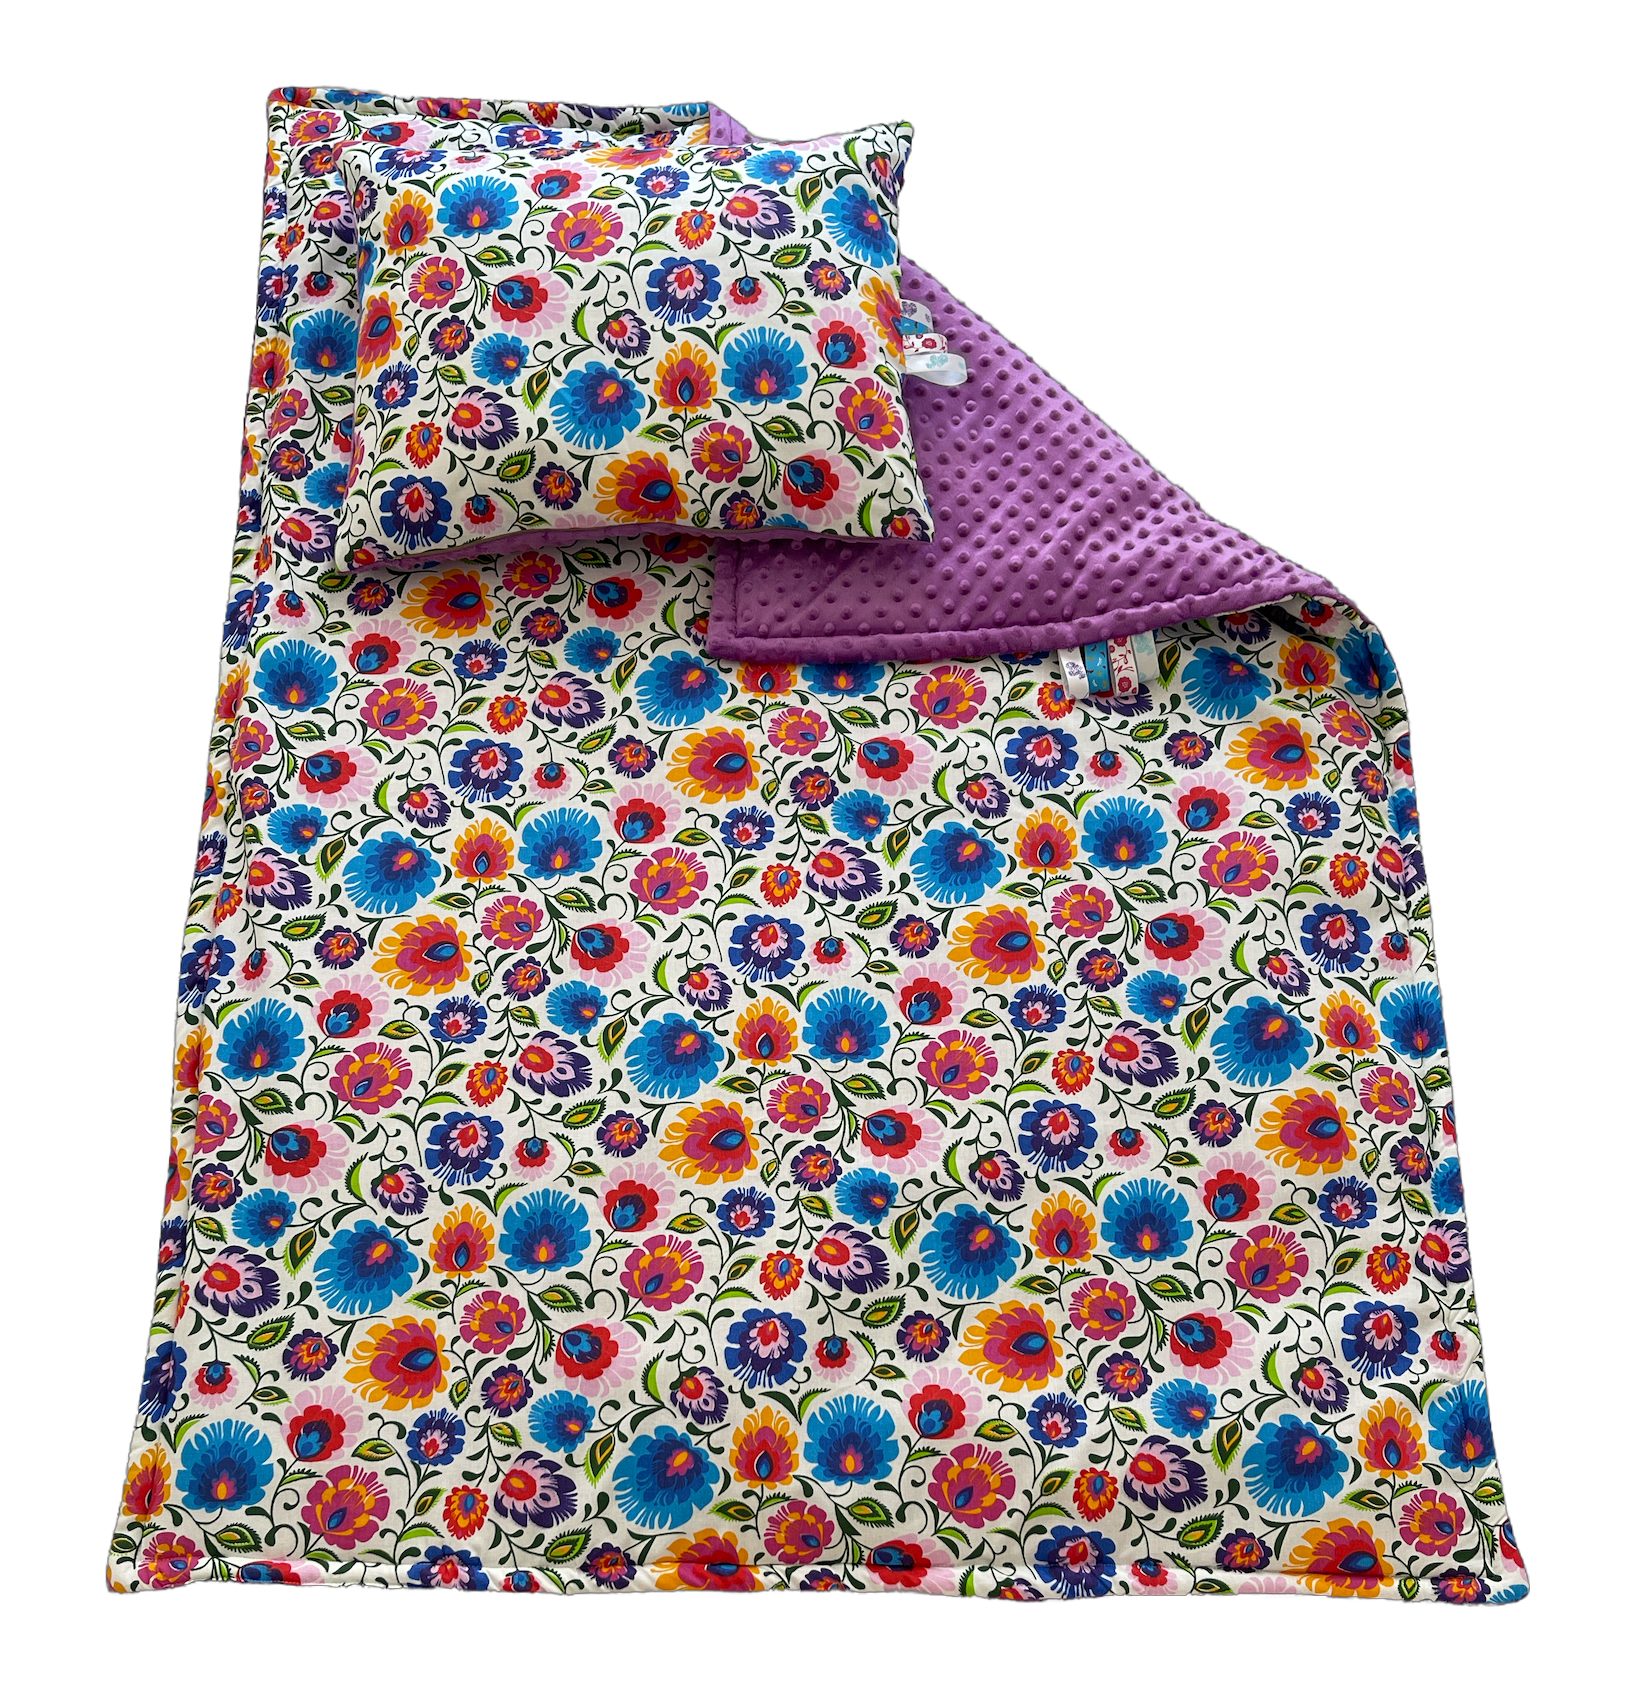 Kinderdecke Kinderdecke Krabbeldecke RoKo-Textilien, mit 40x50cm, Kinderbettdecke 100x135cm Kopfkissen mit Bänder